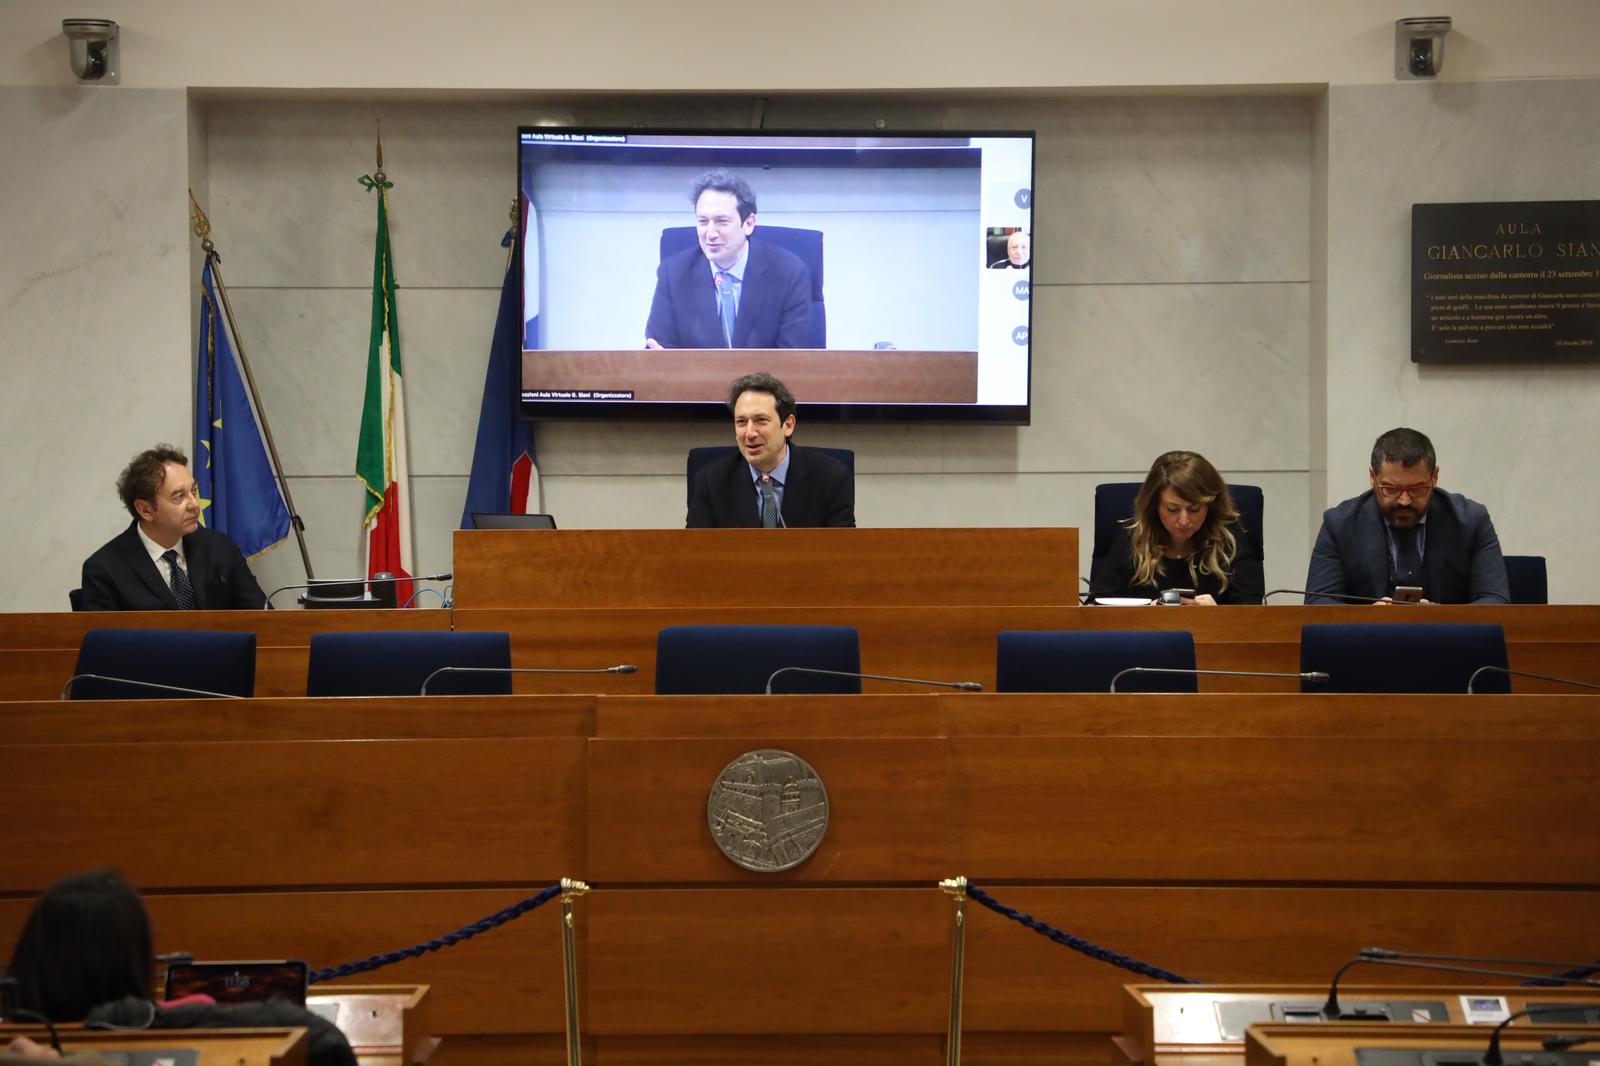 Regione Campania: consigliere Cammarano “Comunità energetiche, 100 sindaci in audizione per favorire sviluppo aree interne”